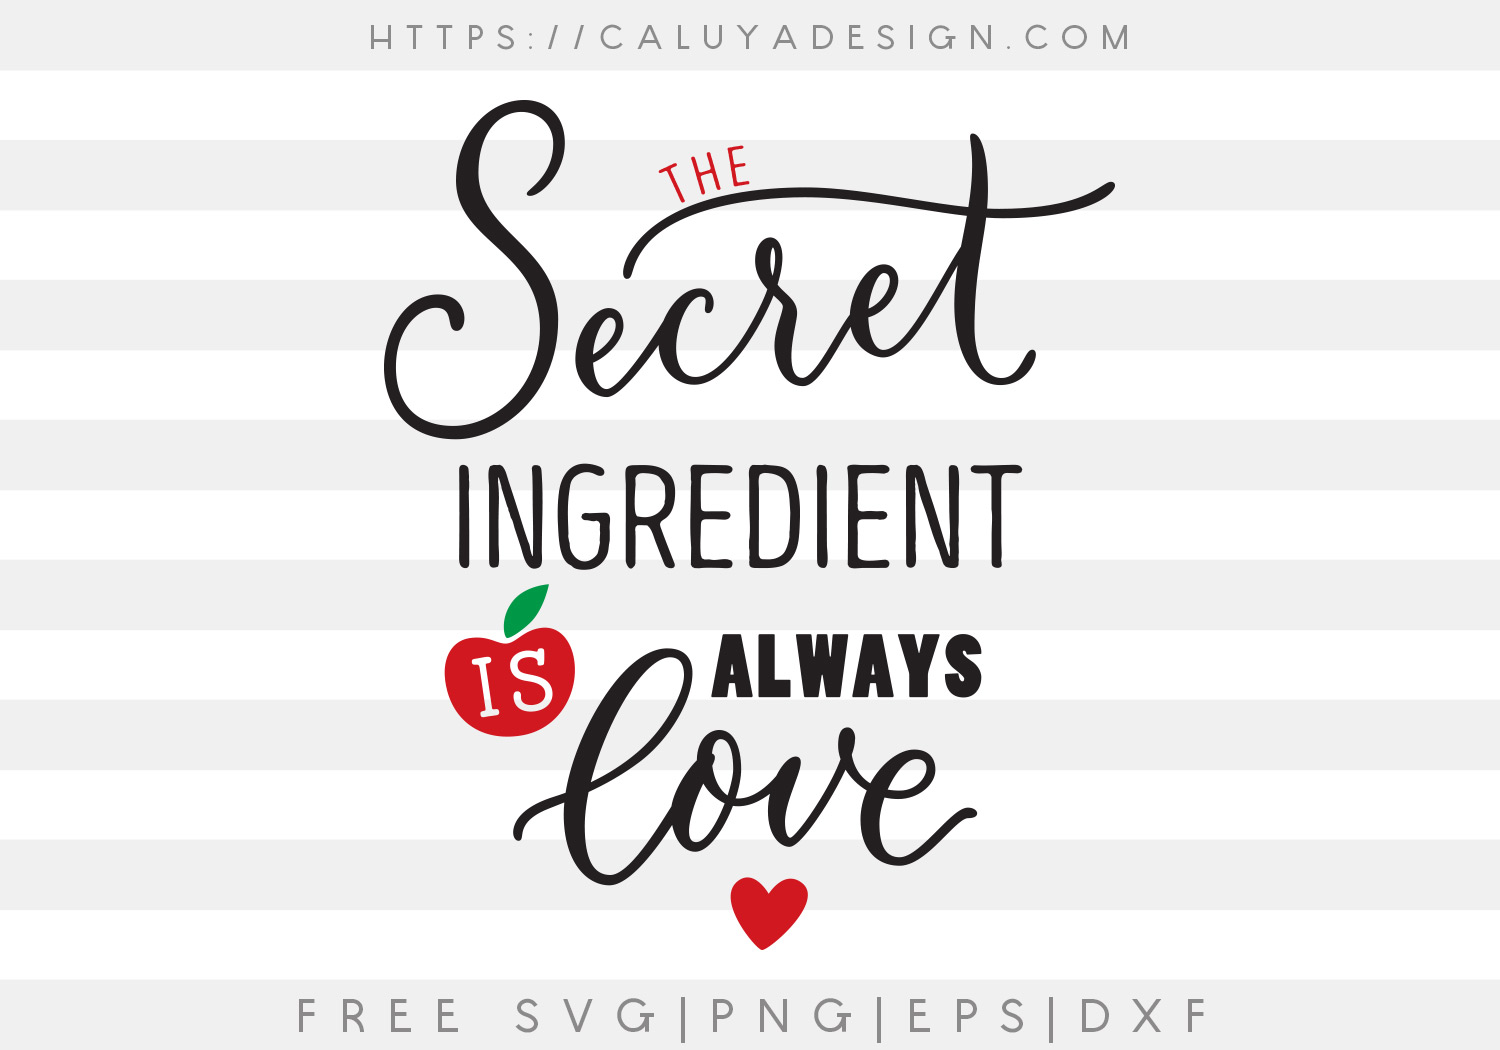 Free Secret Ingredients SVG, PNG, EPS & DXF